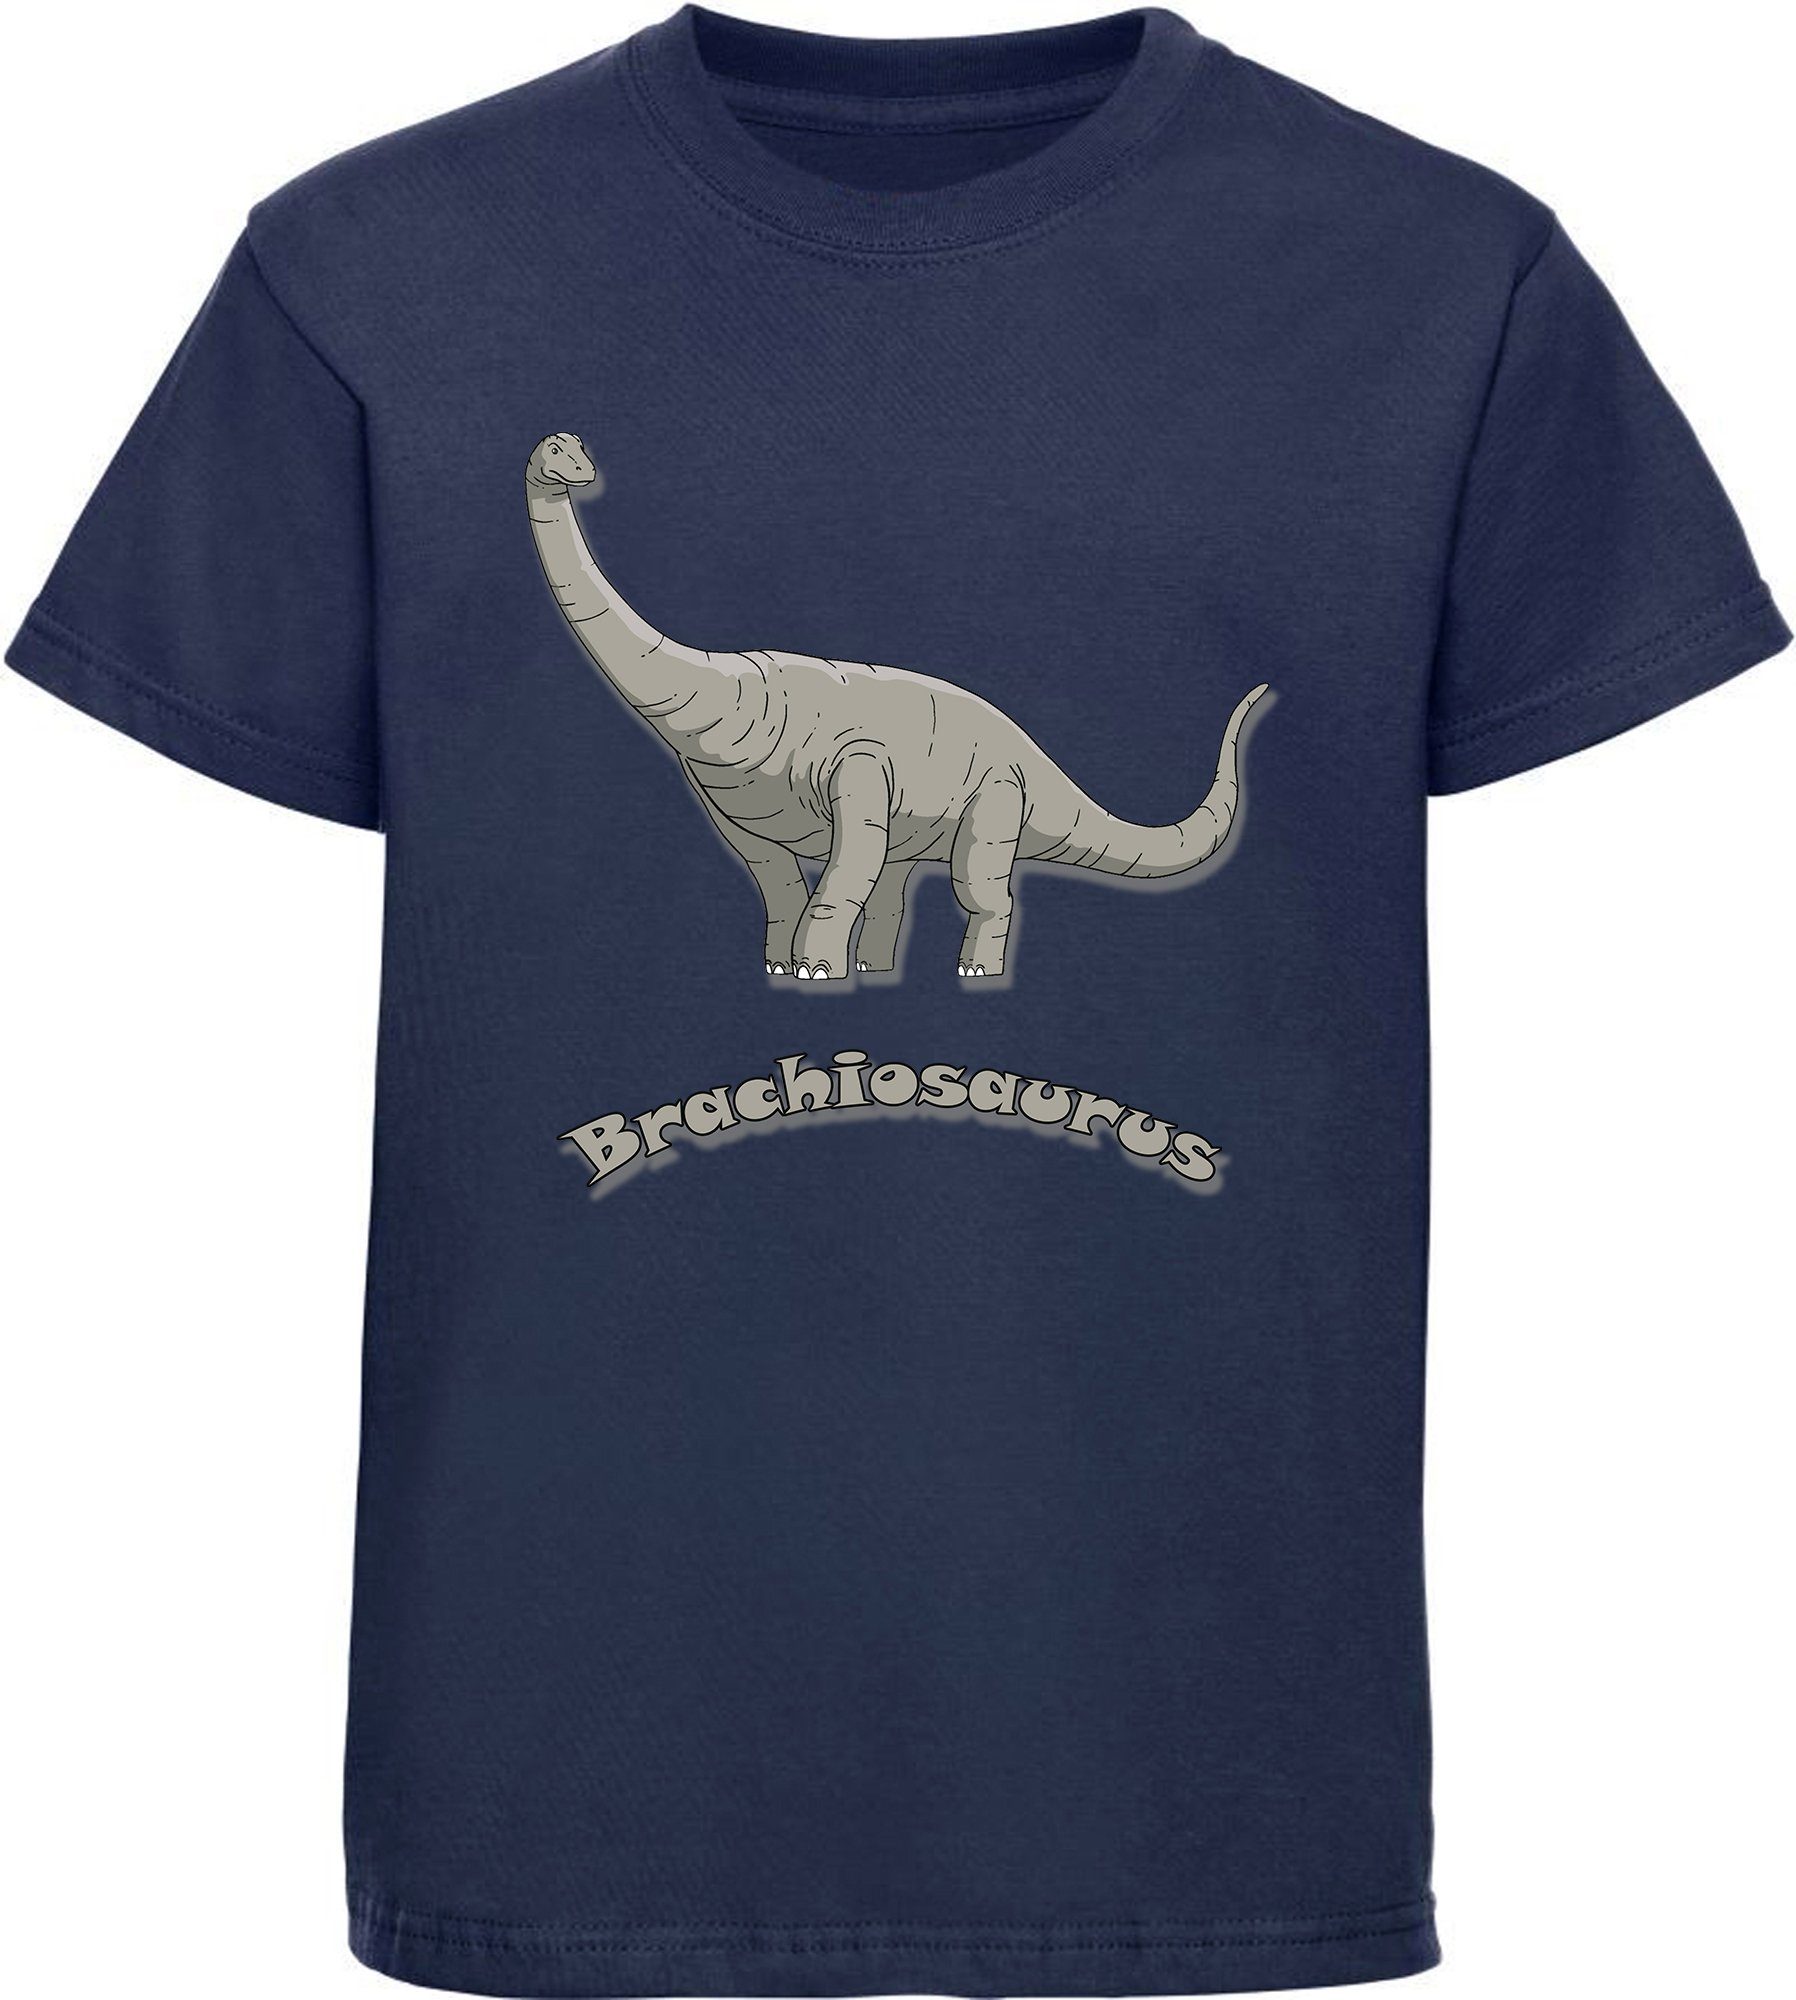 mit blau, schwarz, MyDesign24 Kinder weiß, blau T-Shirt i66 Baumwollshirt Brachiosaurus Print-Shirt mit Dino, navy bedrucktes rot,